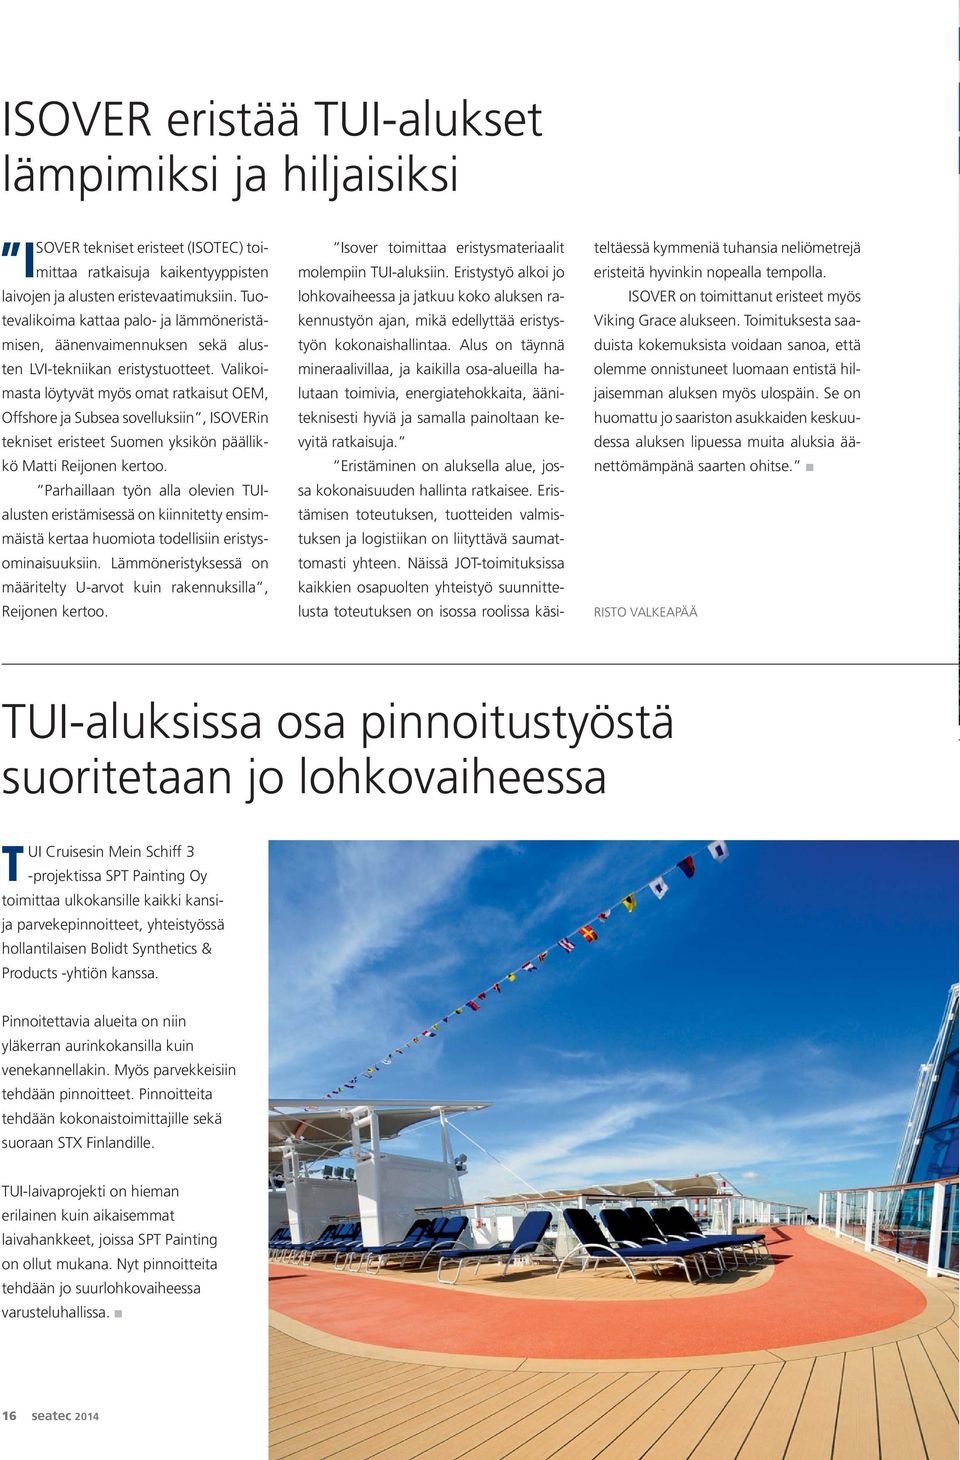 Valikoimasta löytyvät myös omat ratkaisut OEM, Offshore ja Subsea sovelluksiin, ISOVERin tekniset eristeet Suomen yksikön päällikkö Matti Reijonen kertoo.